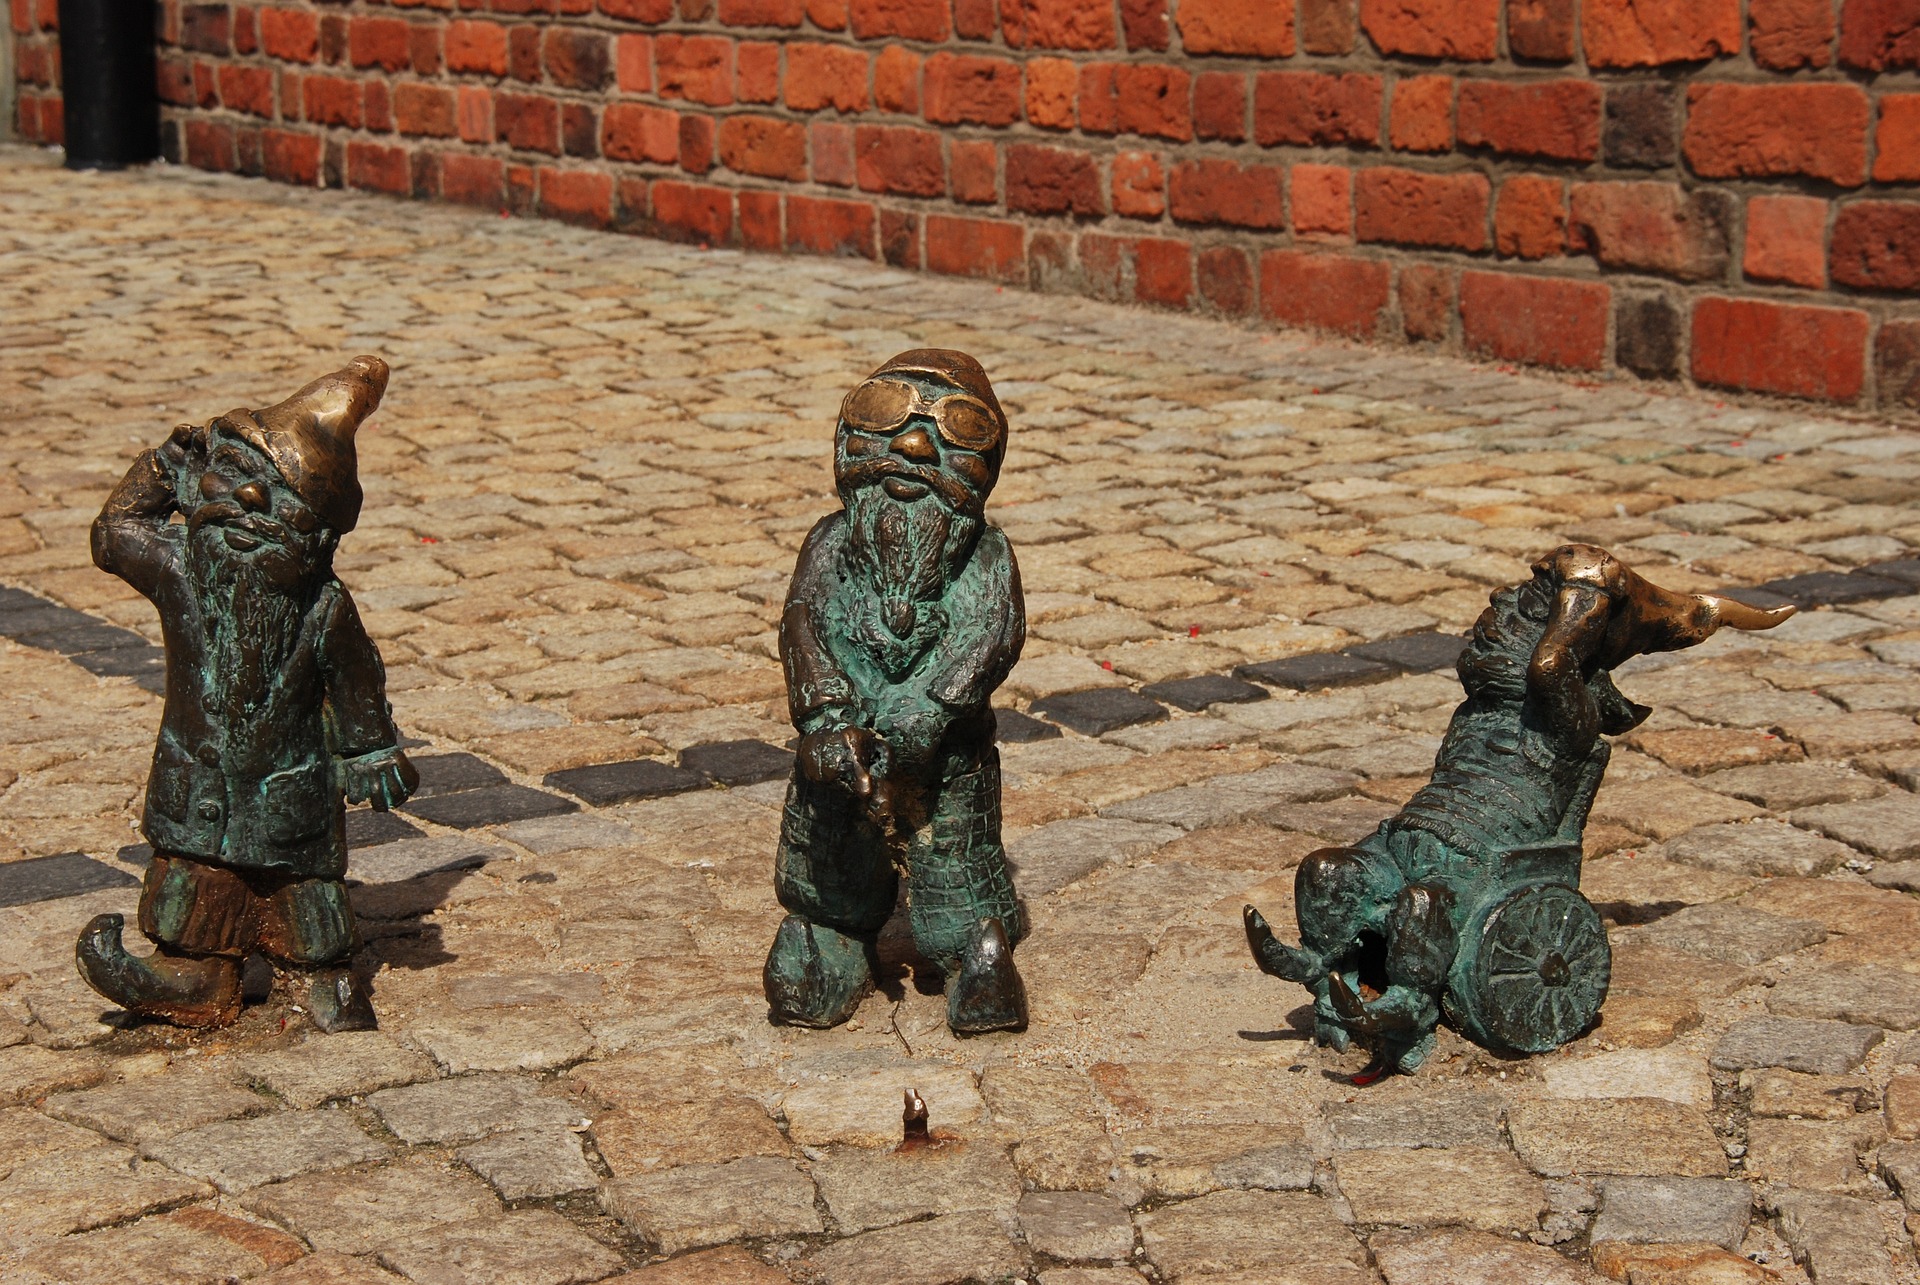 Wrocław's Dwarfs